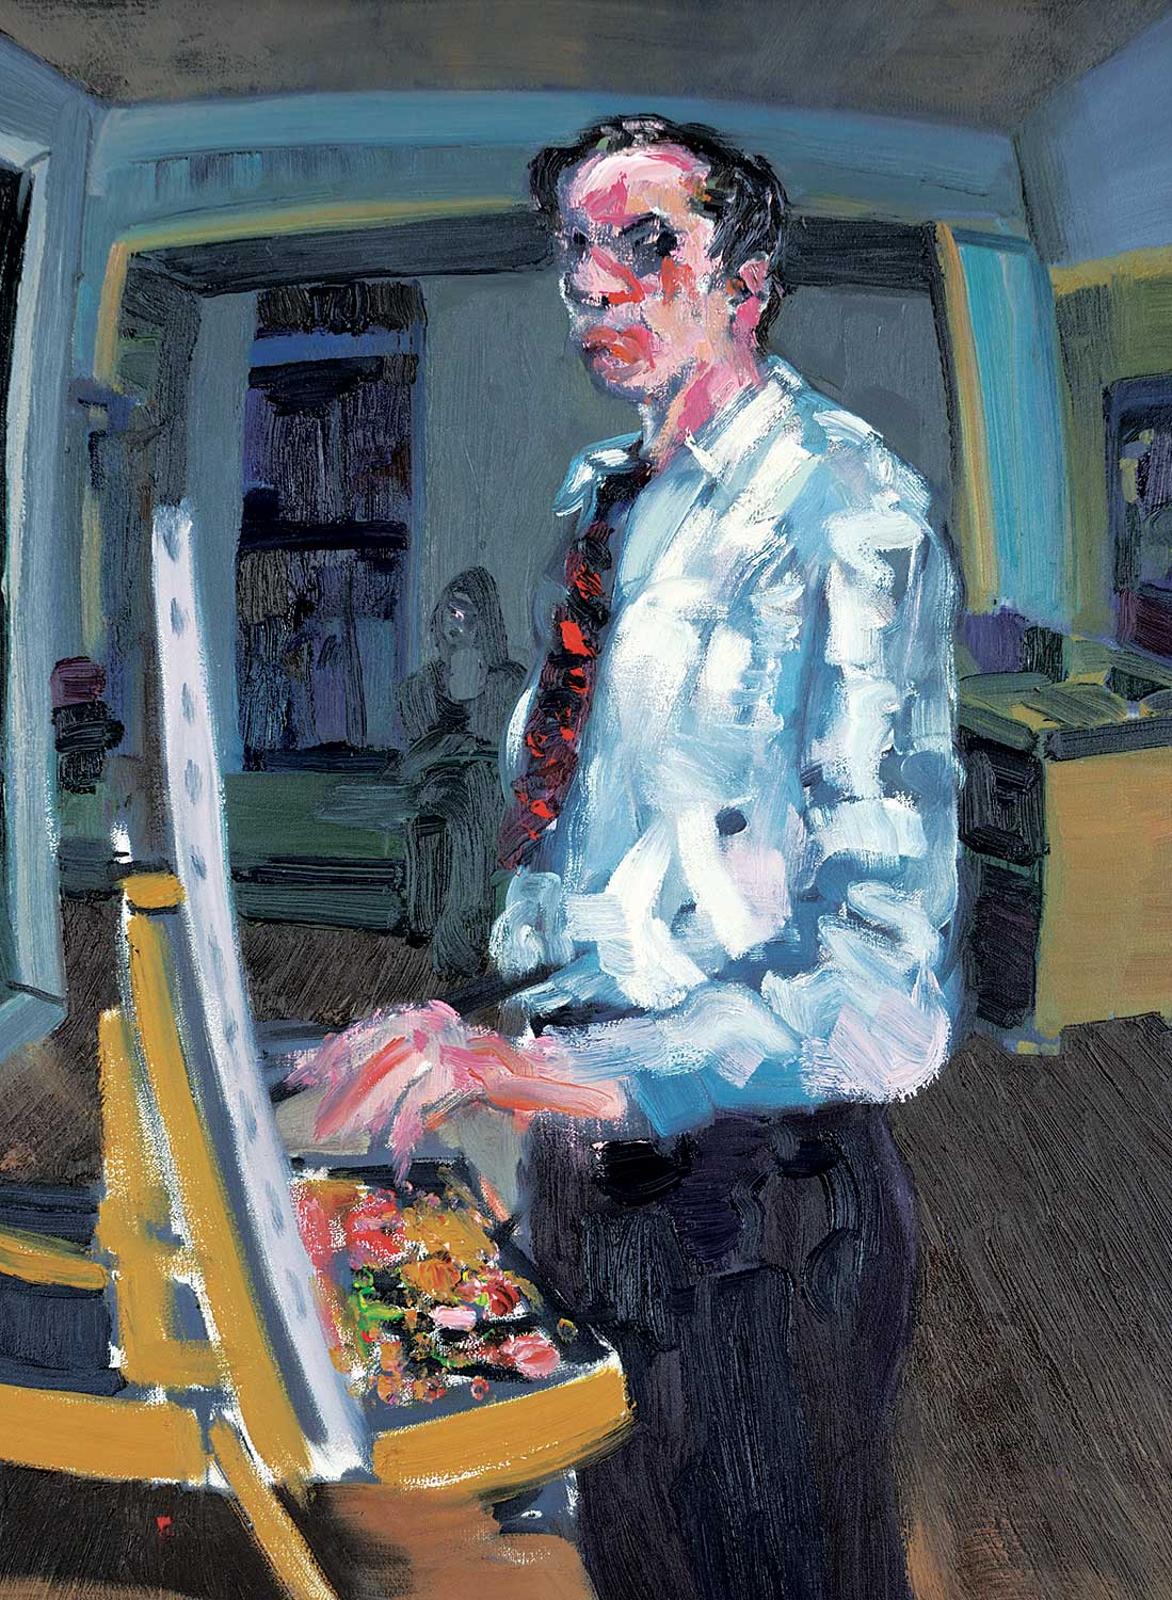 Noah Becker (1970) - Untitled - The Painter